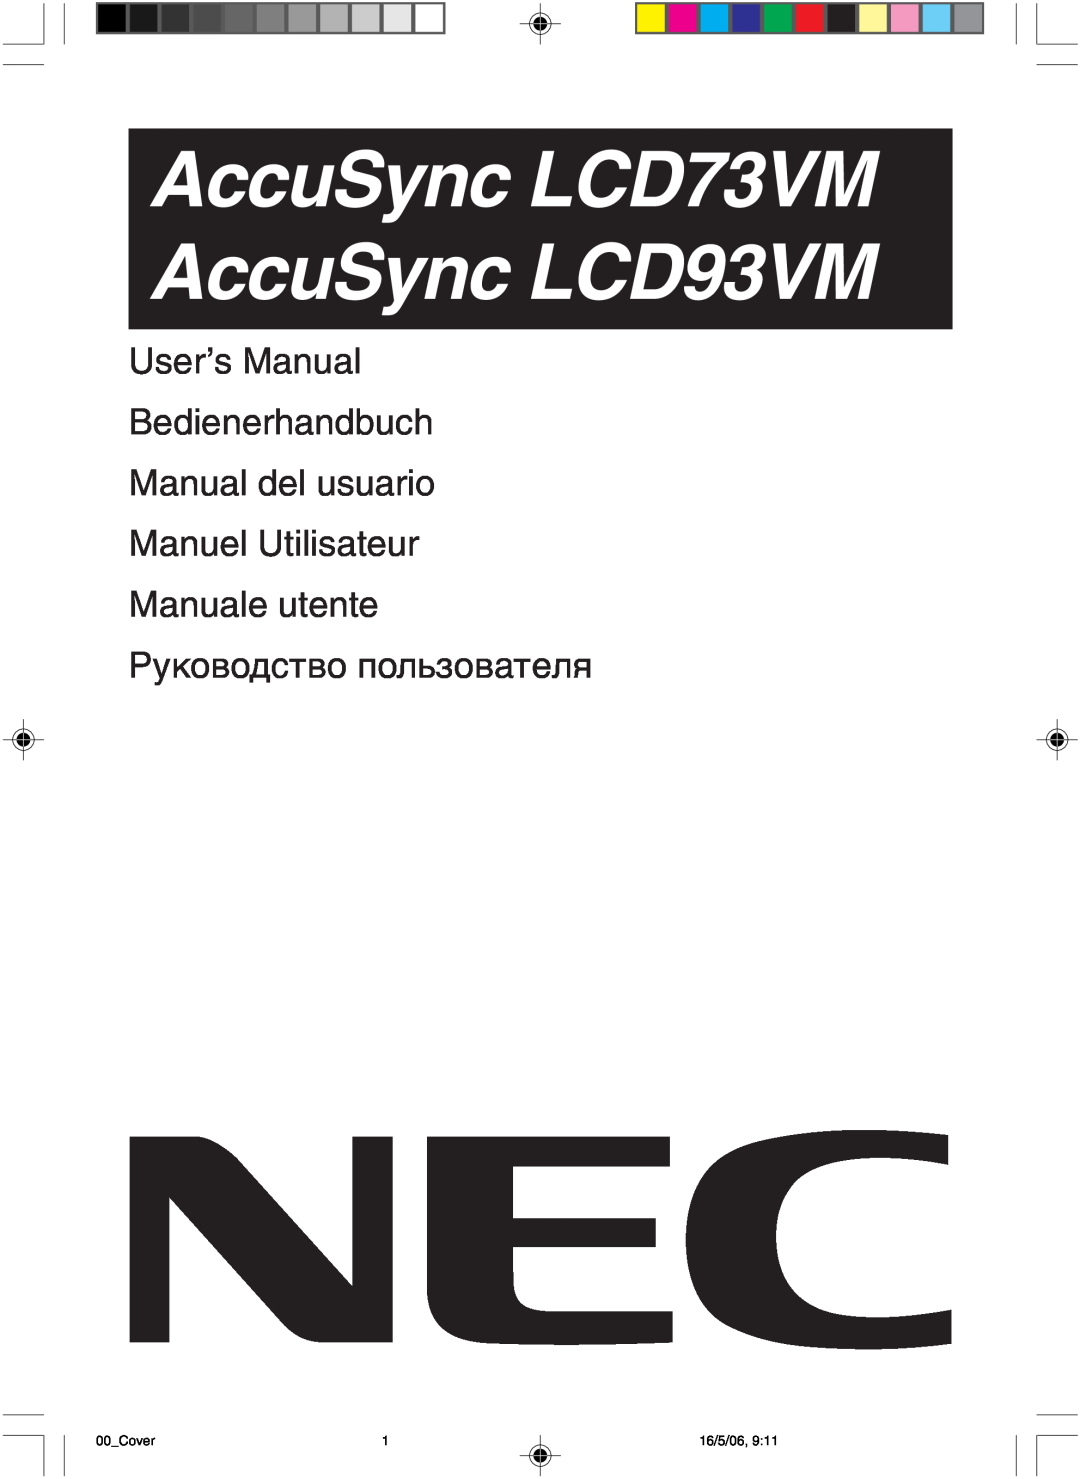 NEC user manual AccuSync LCD73VM AccuSync LCD93VM, User’s Manual Bedienerhandbuch Manual del usuario 